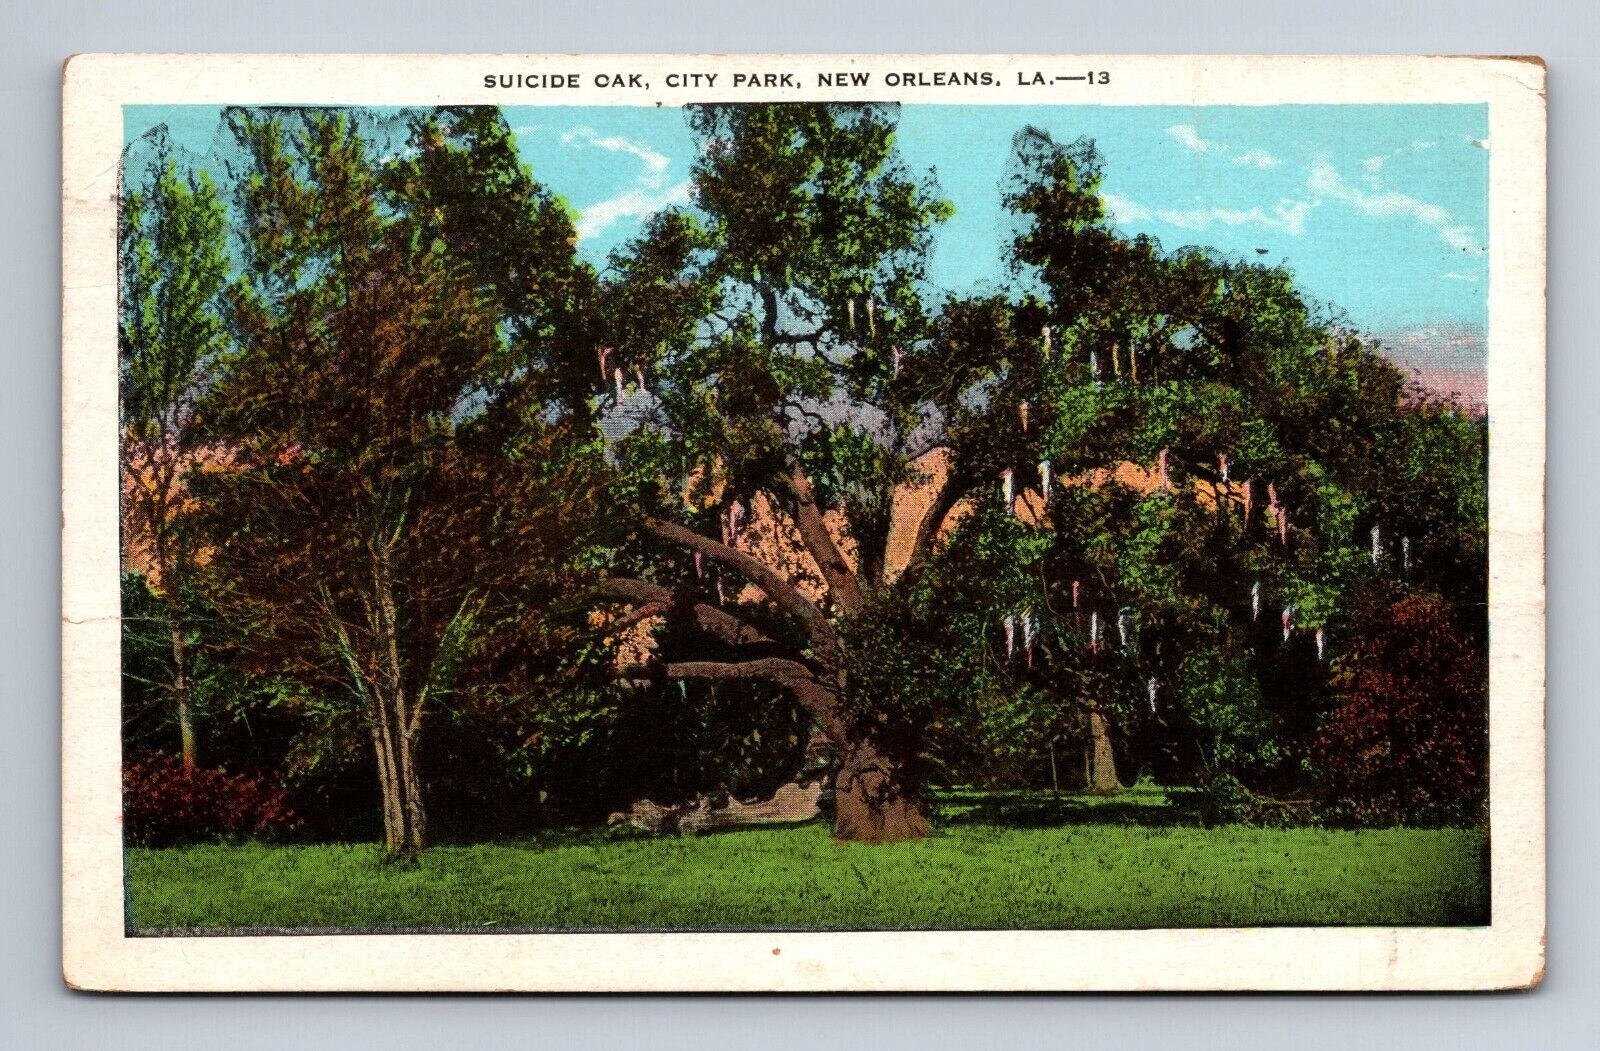 Suicide Oak City Park New Orleans LA Postcard c1932